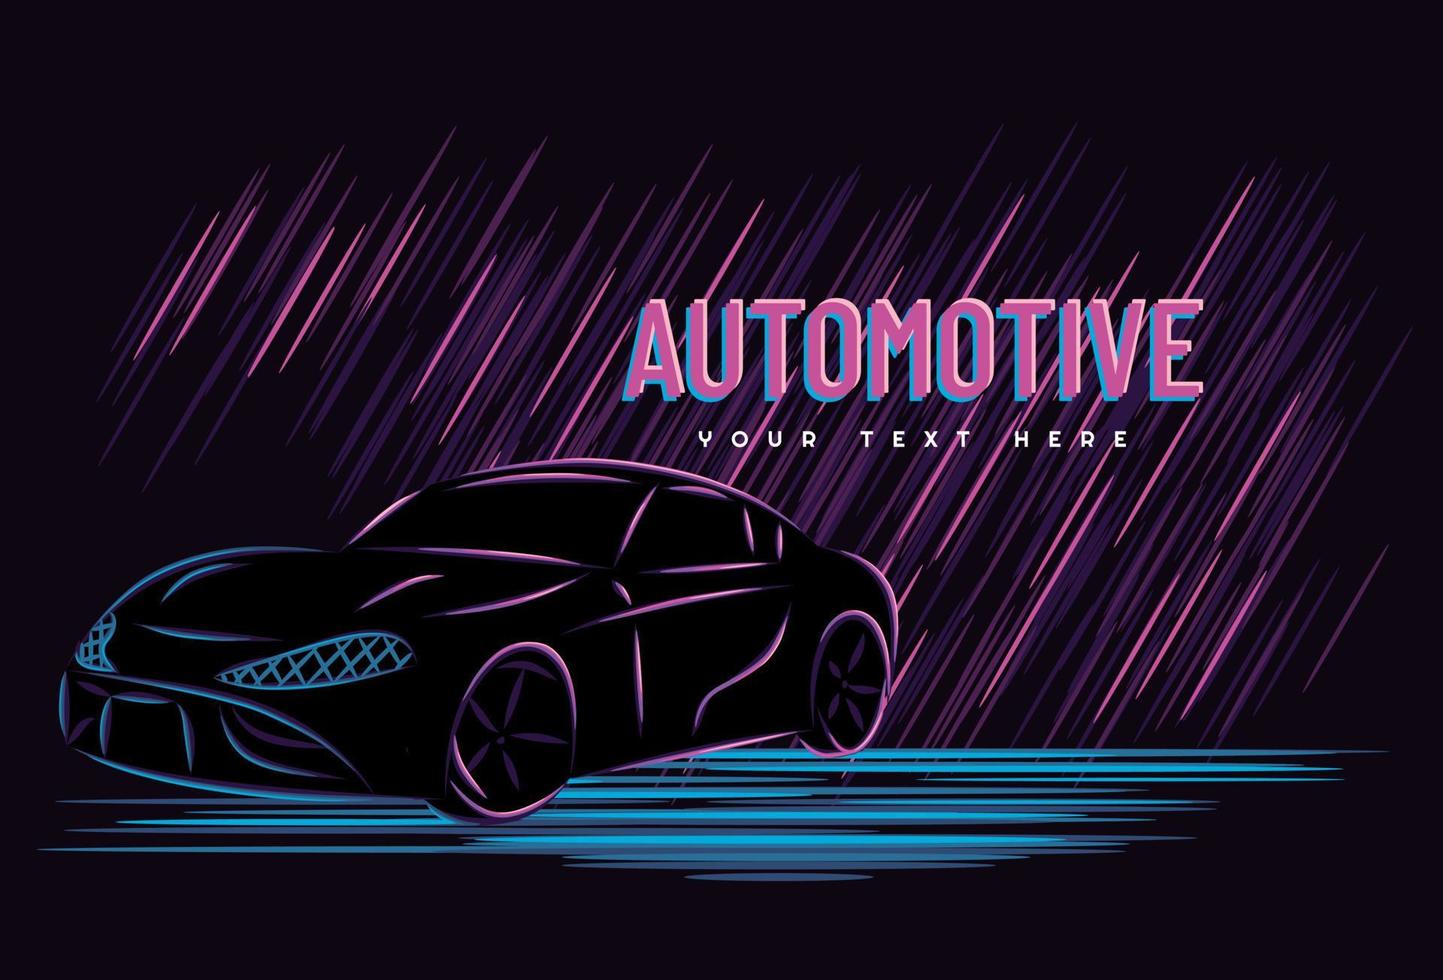 illustratie vectorafbeelding van auto automotive concept met lijn kunst neon teken stijl, goed voor t-shirt, spandoek, poster, bestemmingspagina, flyer vector